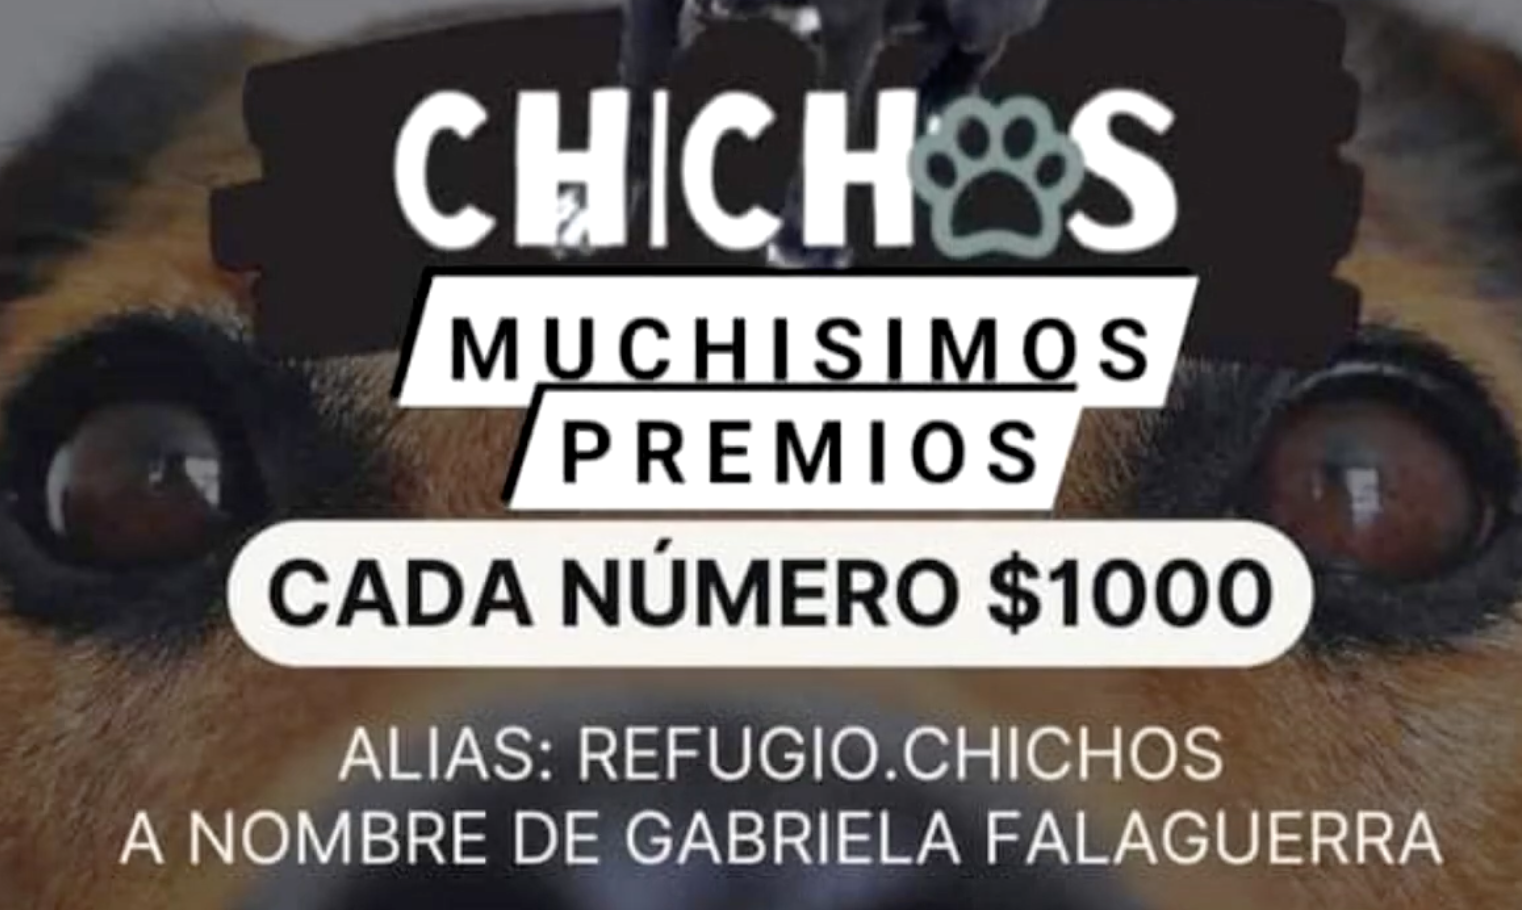 RIFA A BENEFICIO DEL REFUGIO CHICHOS: PUEDEN HACERSE AL ALIAS REFUGIO.CHICHOS / CHICHOS.SC